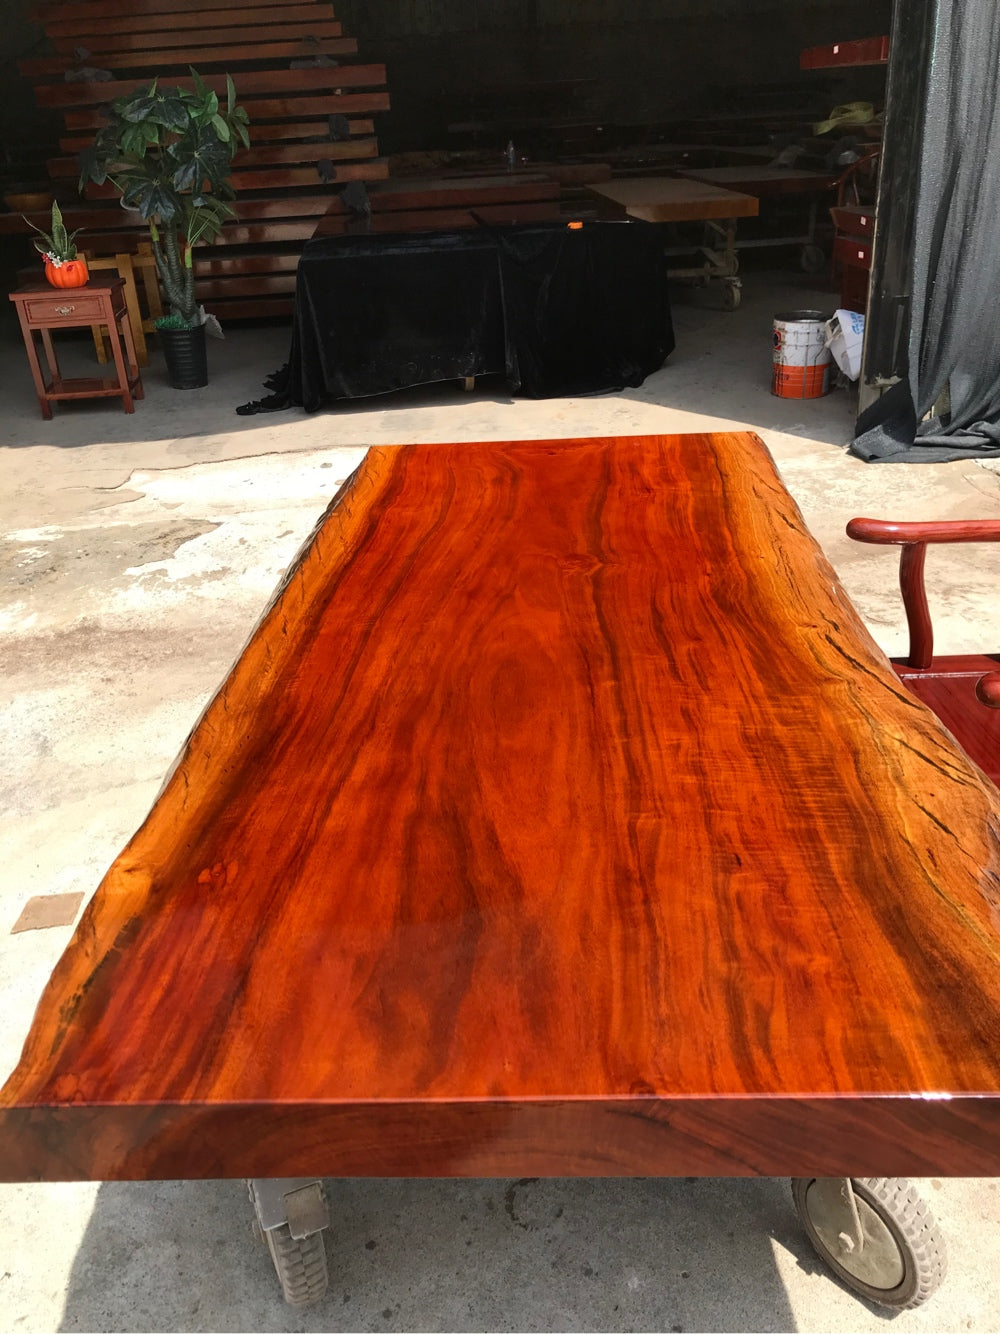 ألواح خشبية لأسطح الطاولات في المملكة المتحدة، طاولة طعام لوح خشب كوبال روديسيان، سطح طاولة لوح خشبي